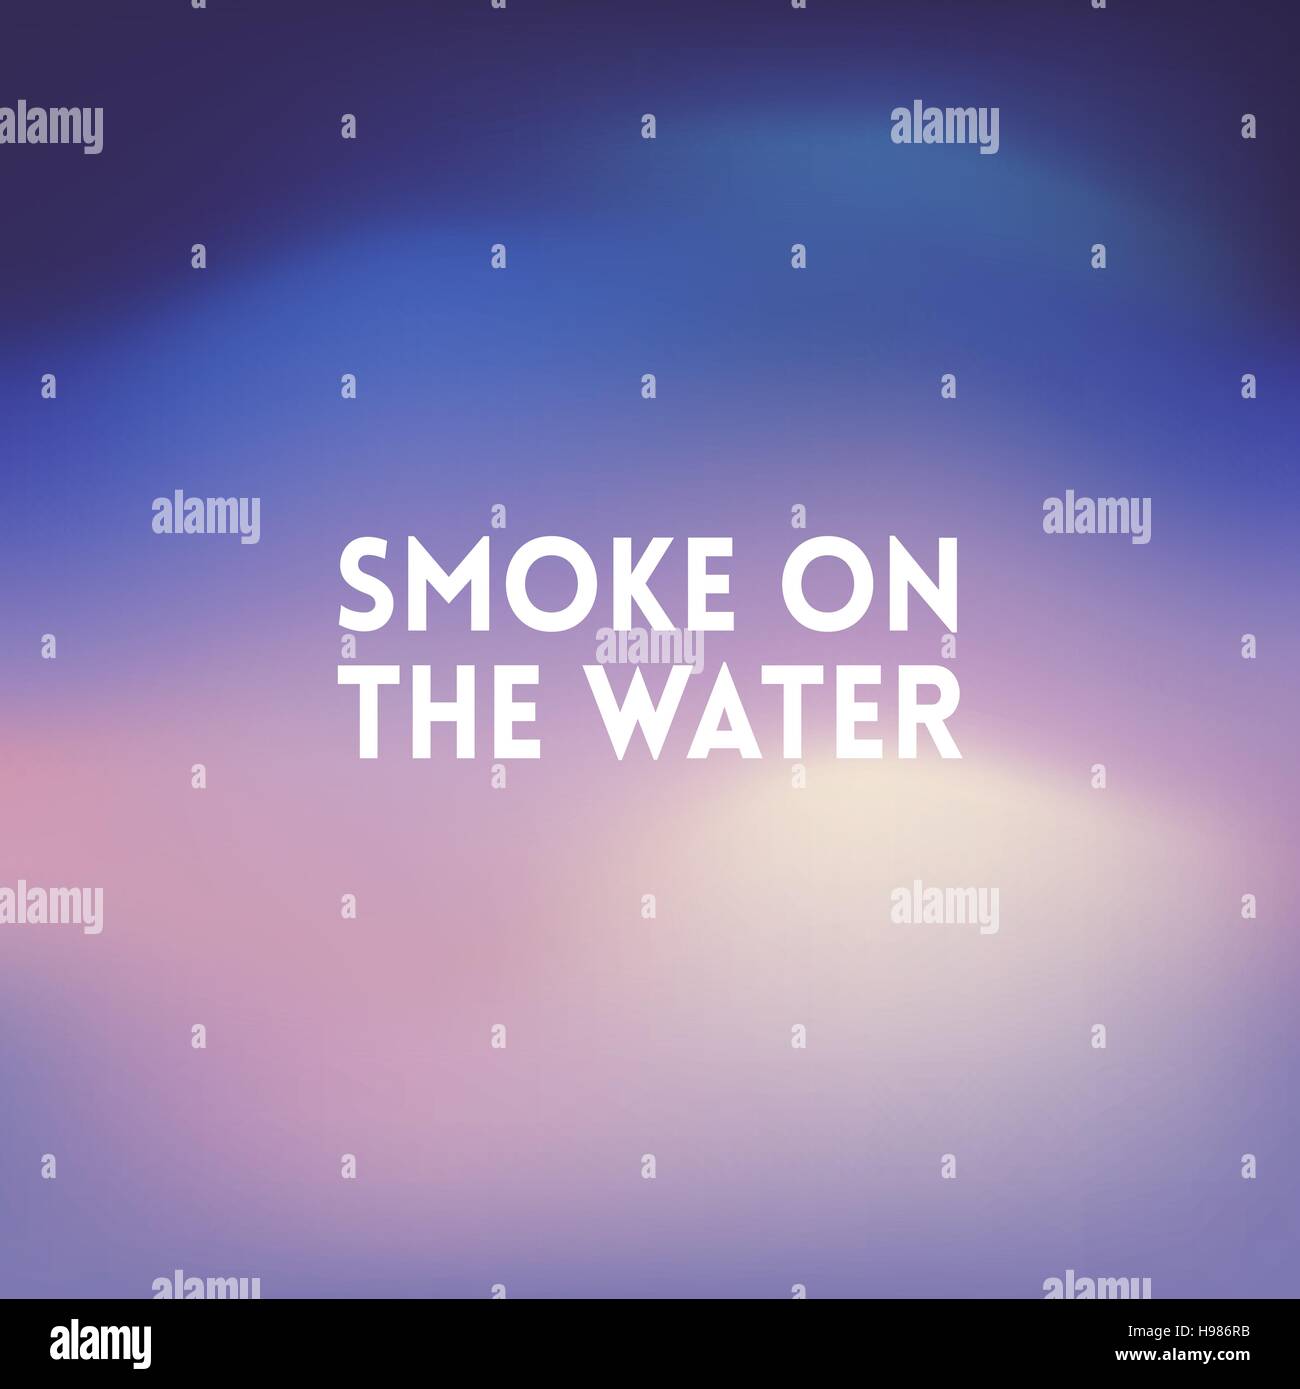 Quadrat der Hintergrund jedoch unscharf - Himmel Wasserfarben des Meeres mit Zitat - Rauch auf dem Wasser Stock Vektor